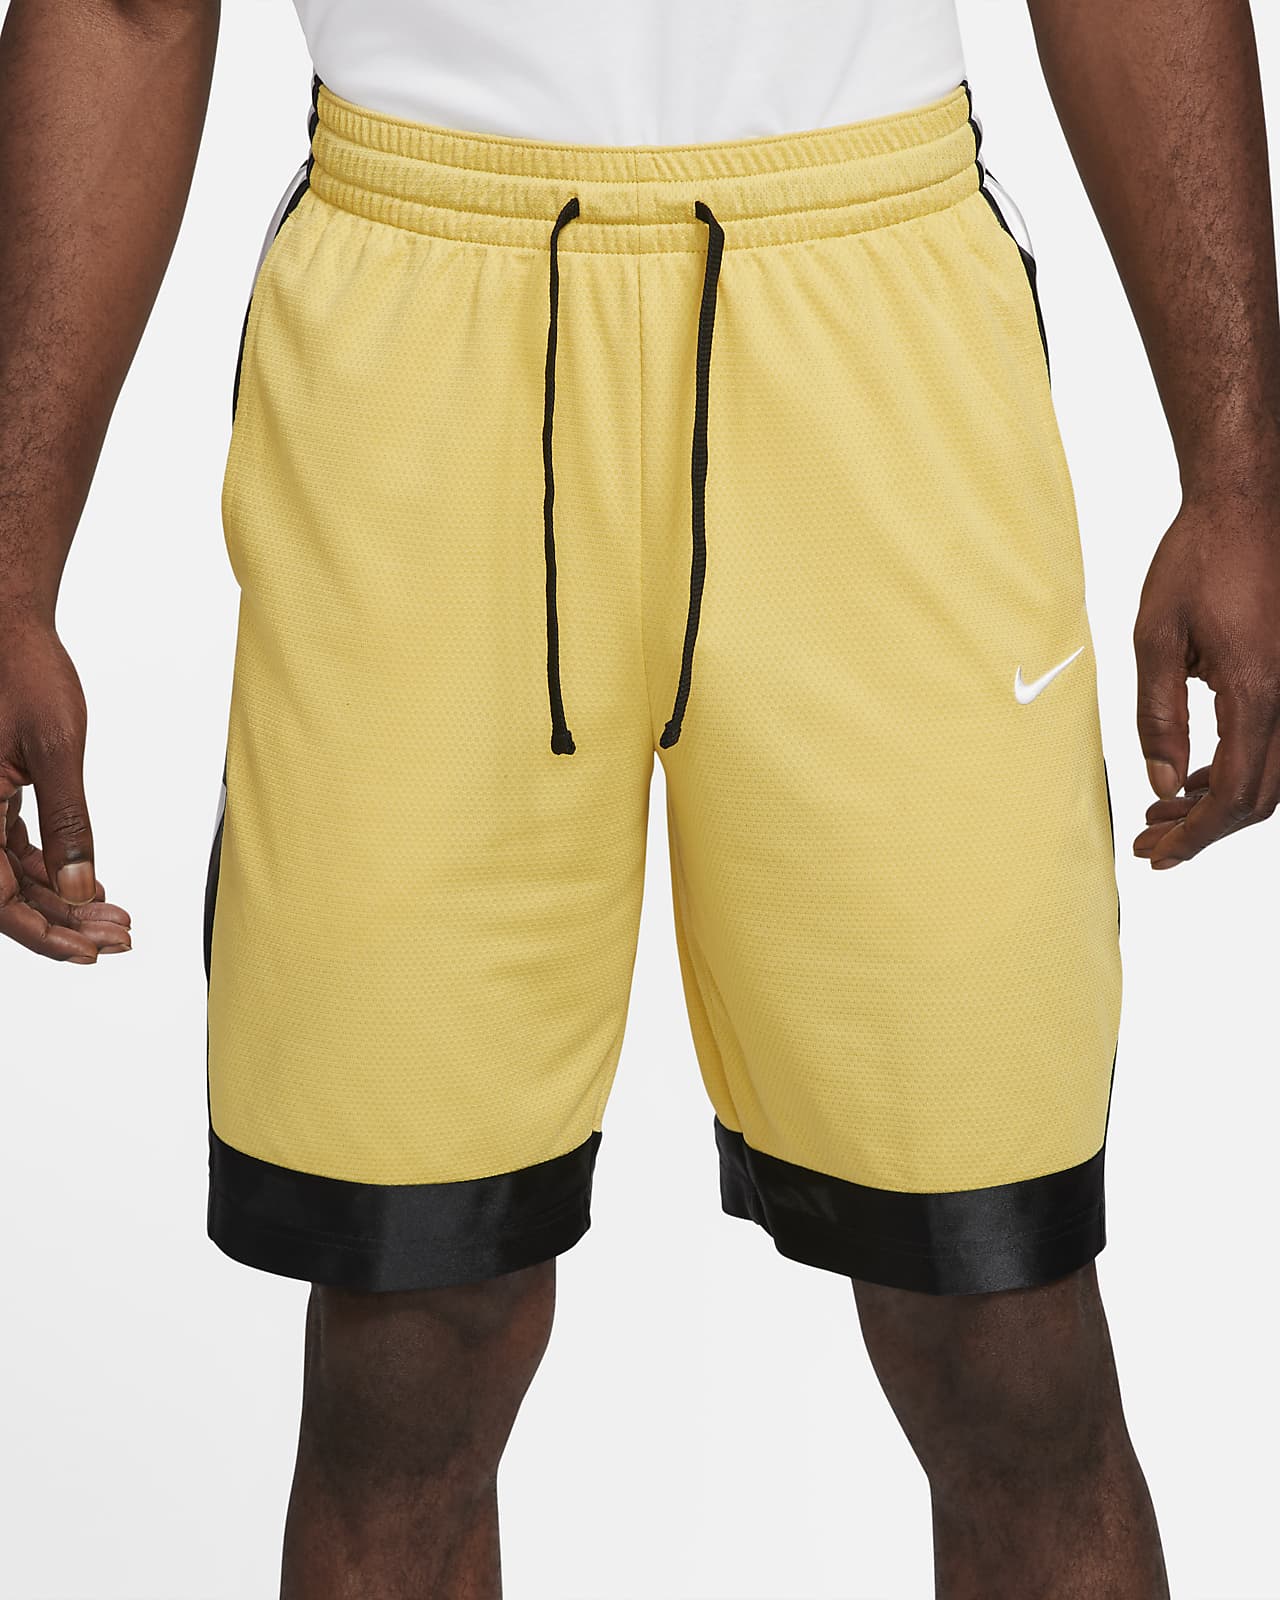 nike basketball shorts size chart